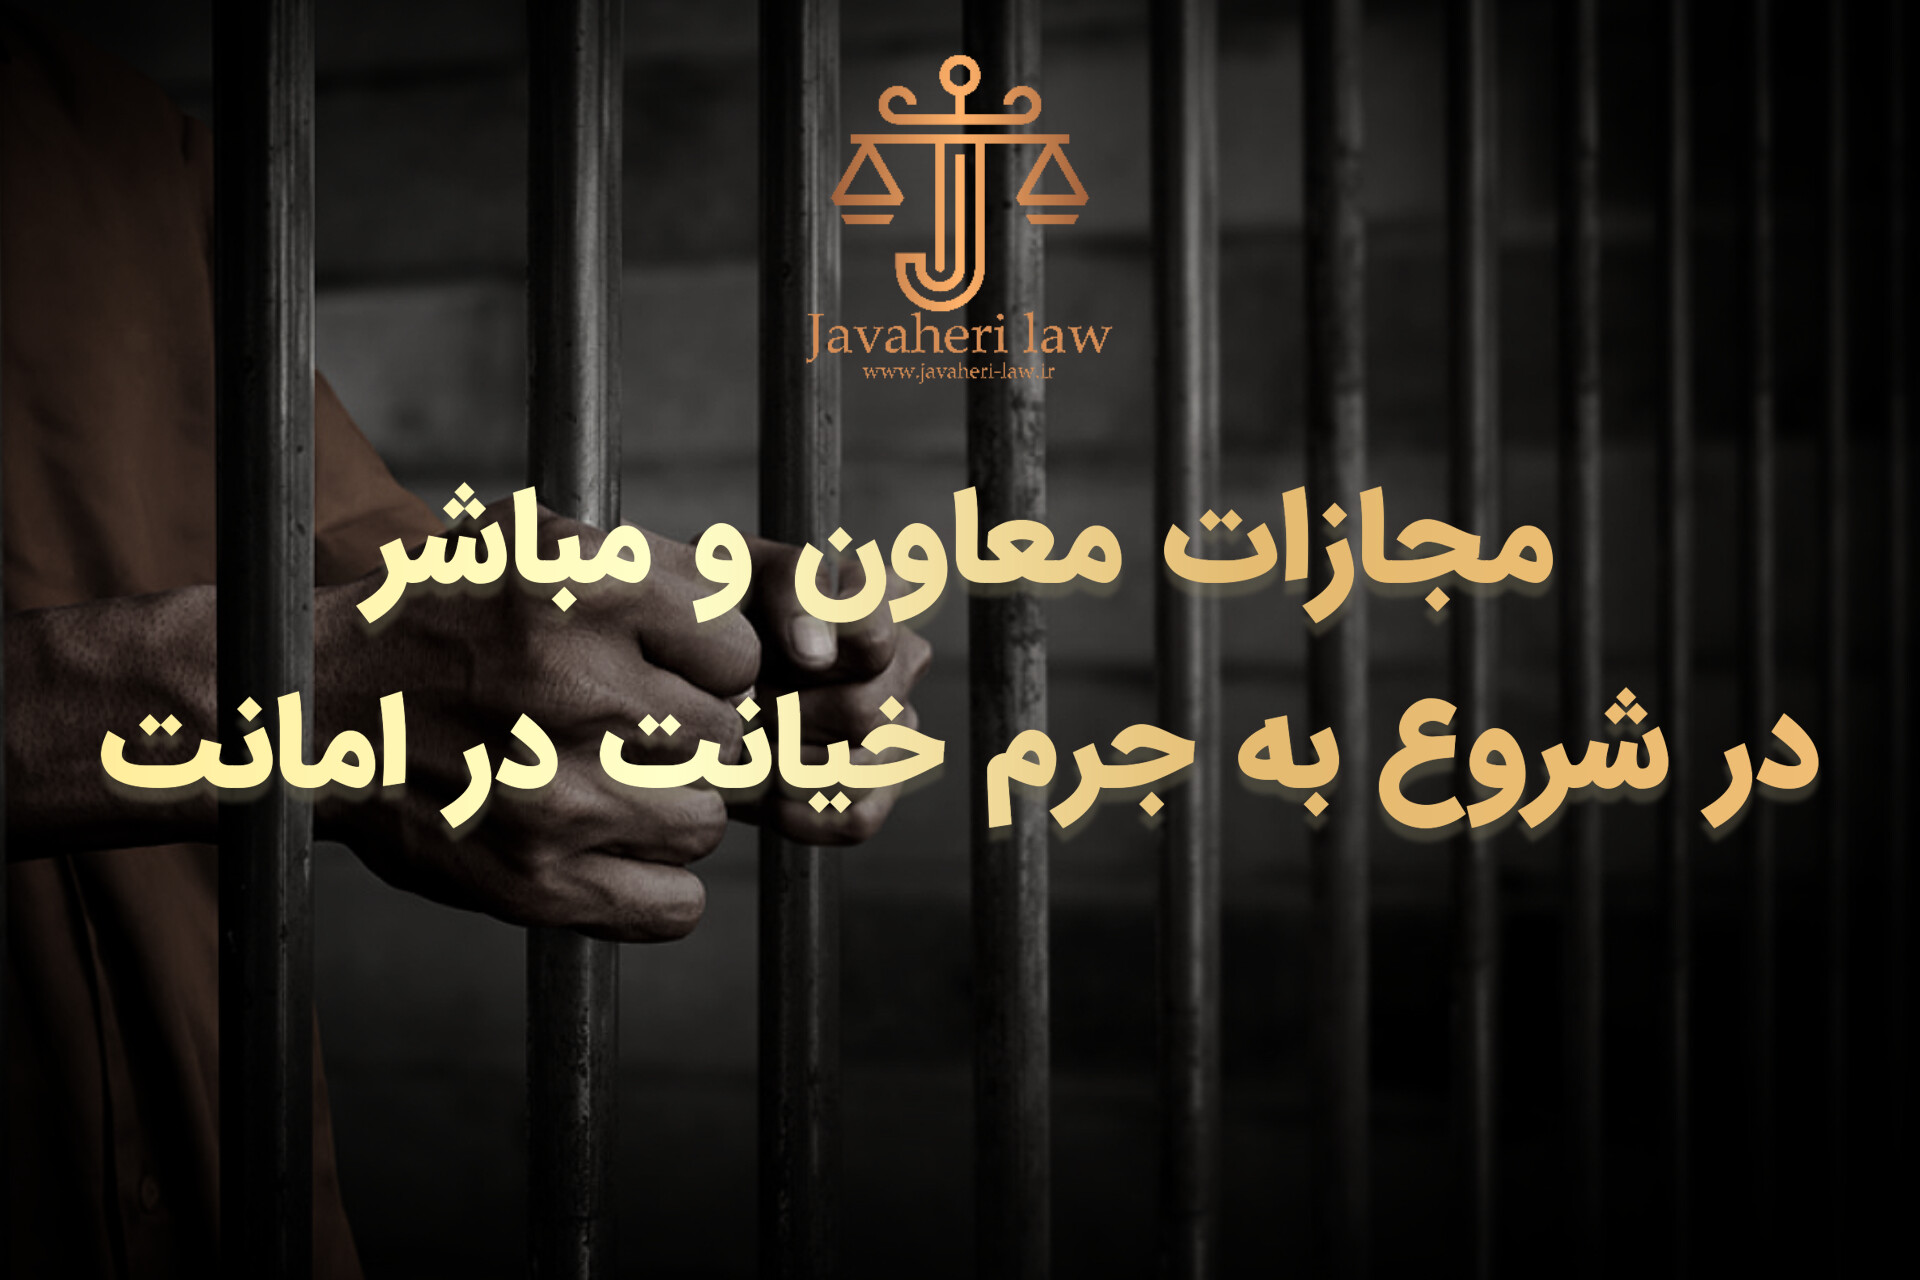 حسین جواهری : مجازات معاون و مباشر در شروع به جرم خیانت در امانت